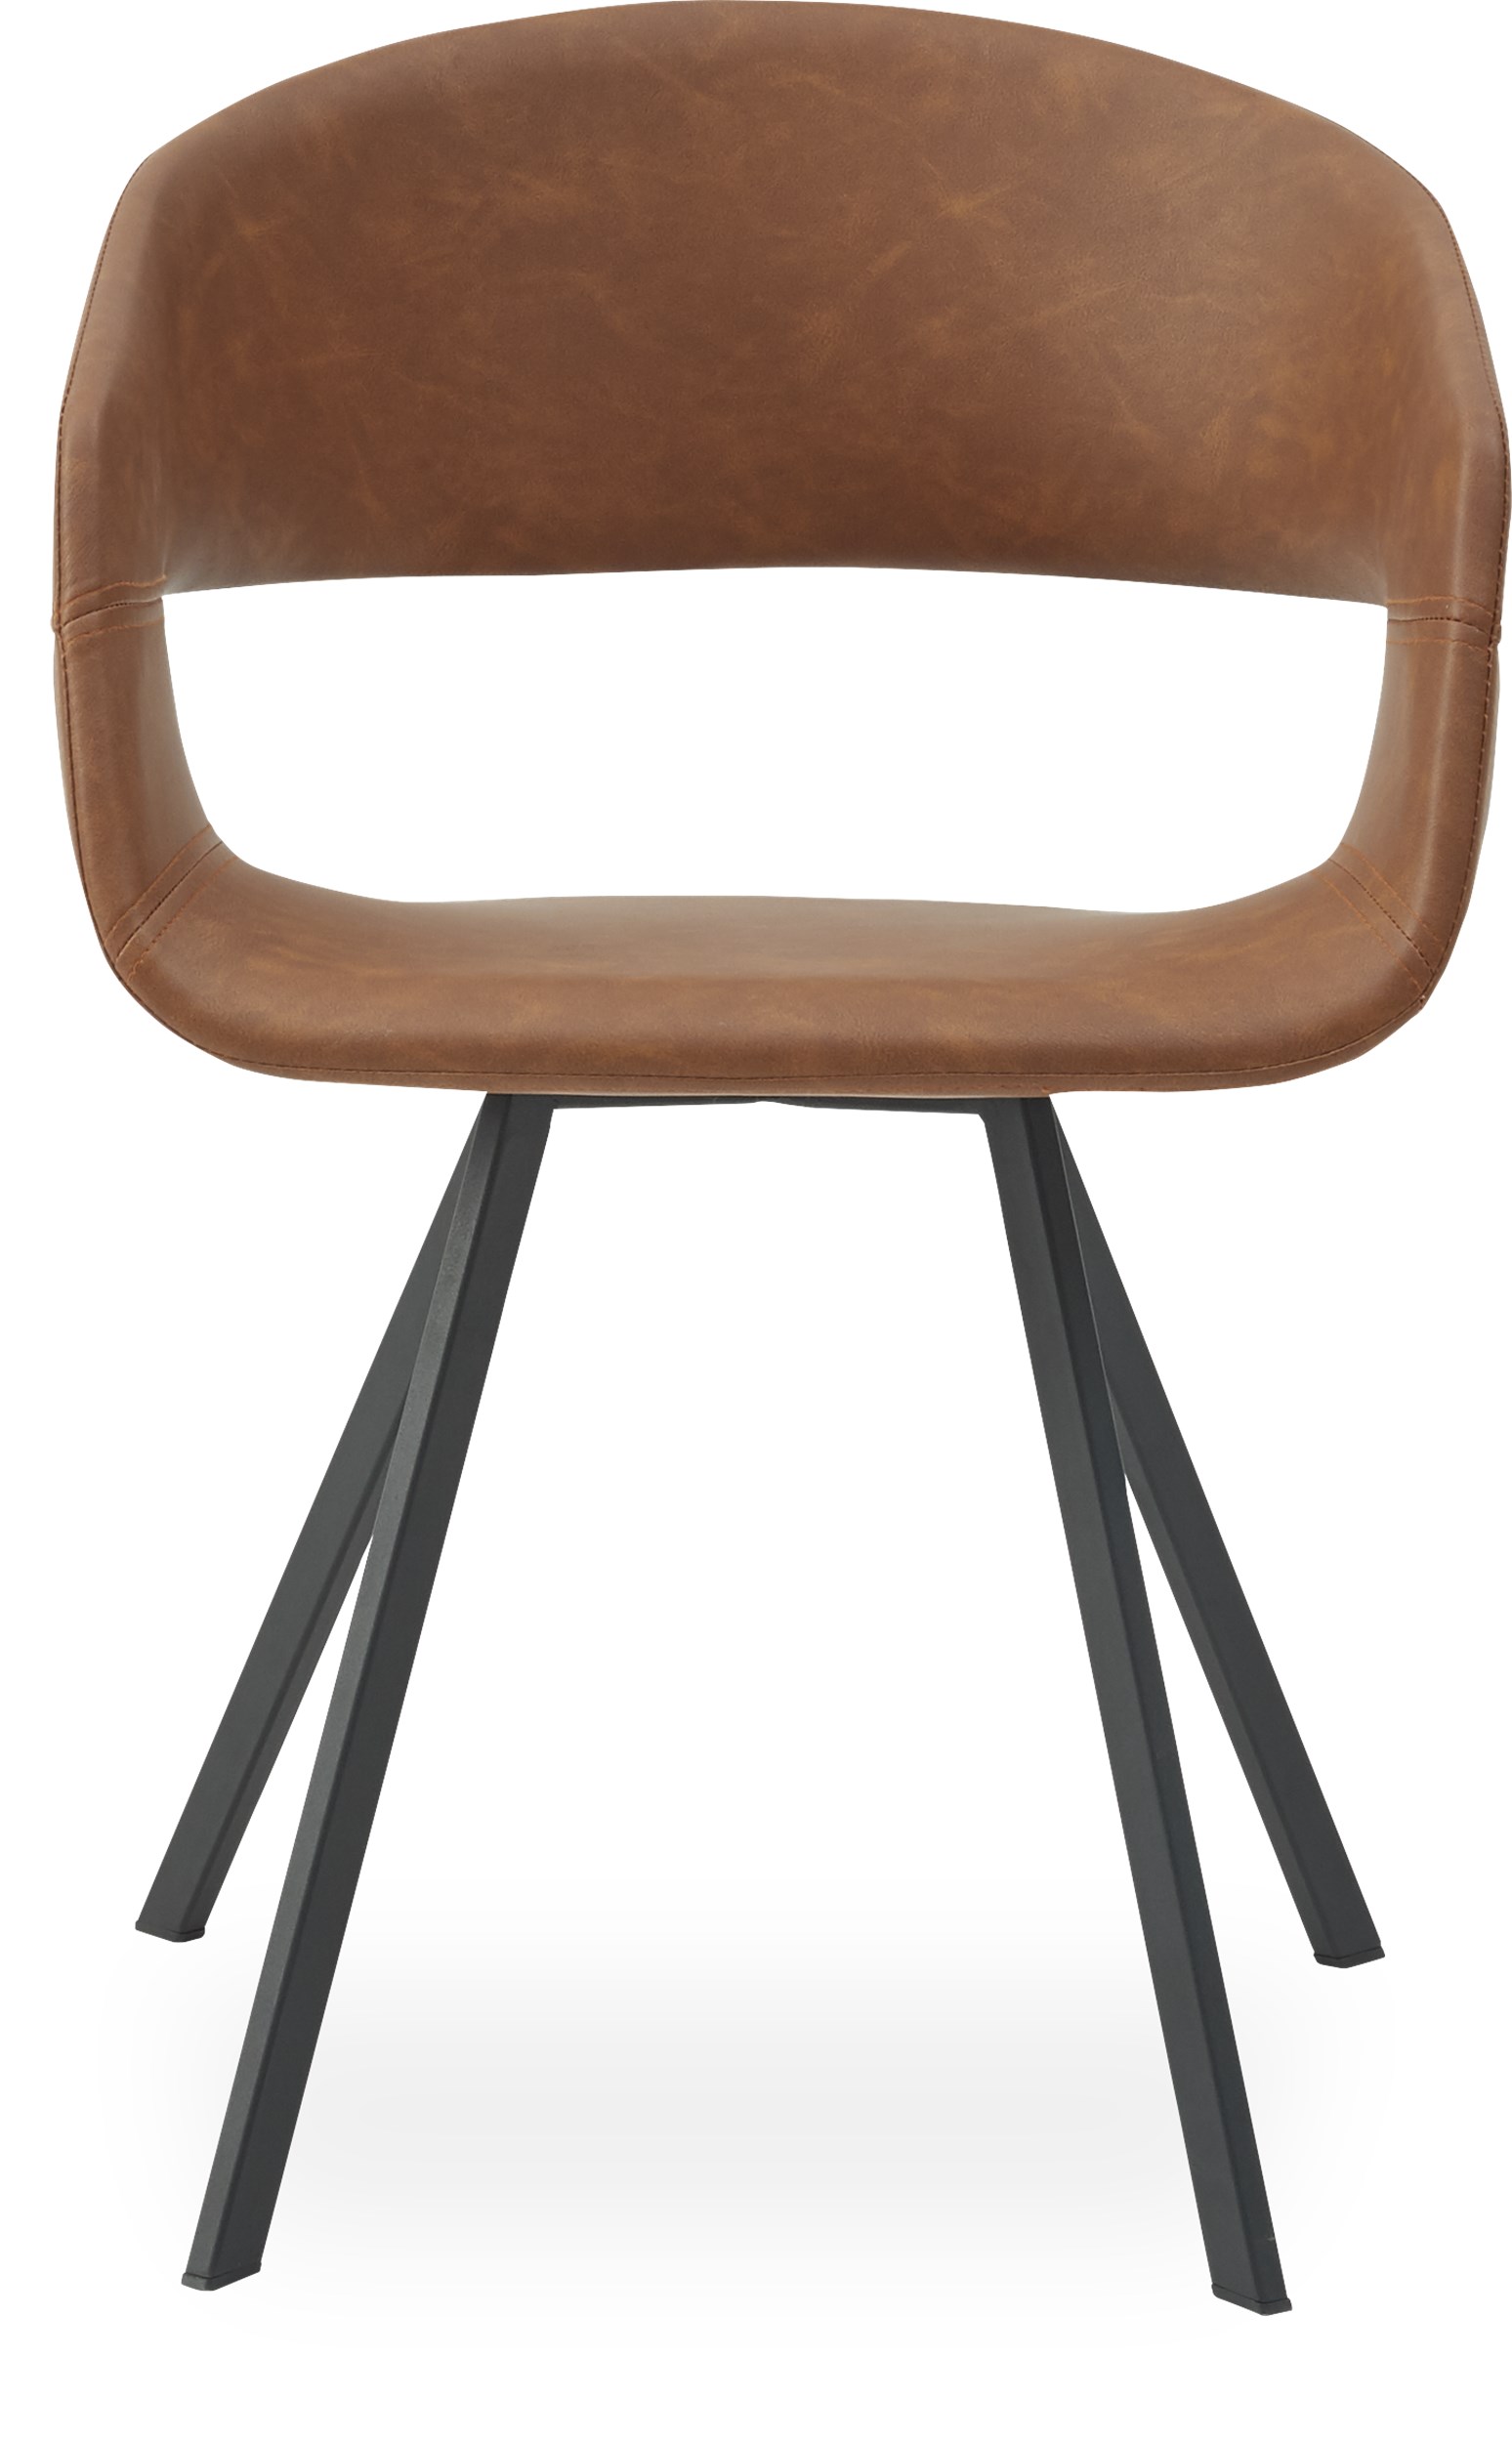 Bow Spisebordsstol - sæde i cognacfarvet kunstlæder og ben i sort pulverlakeret metal